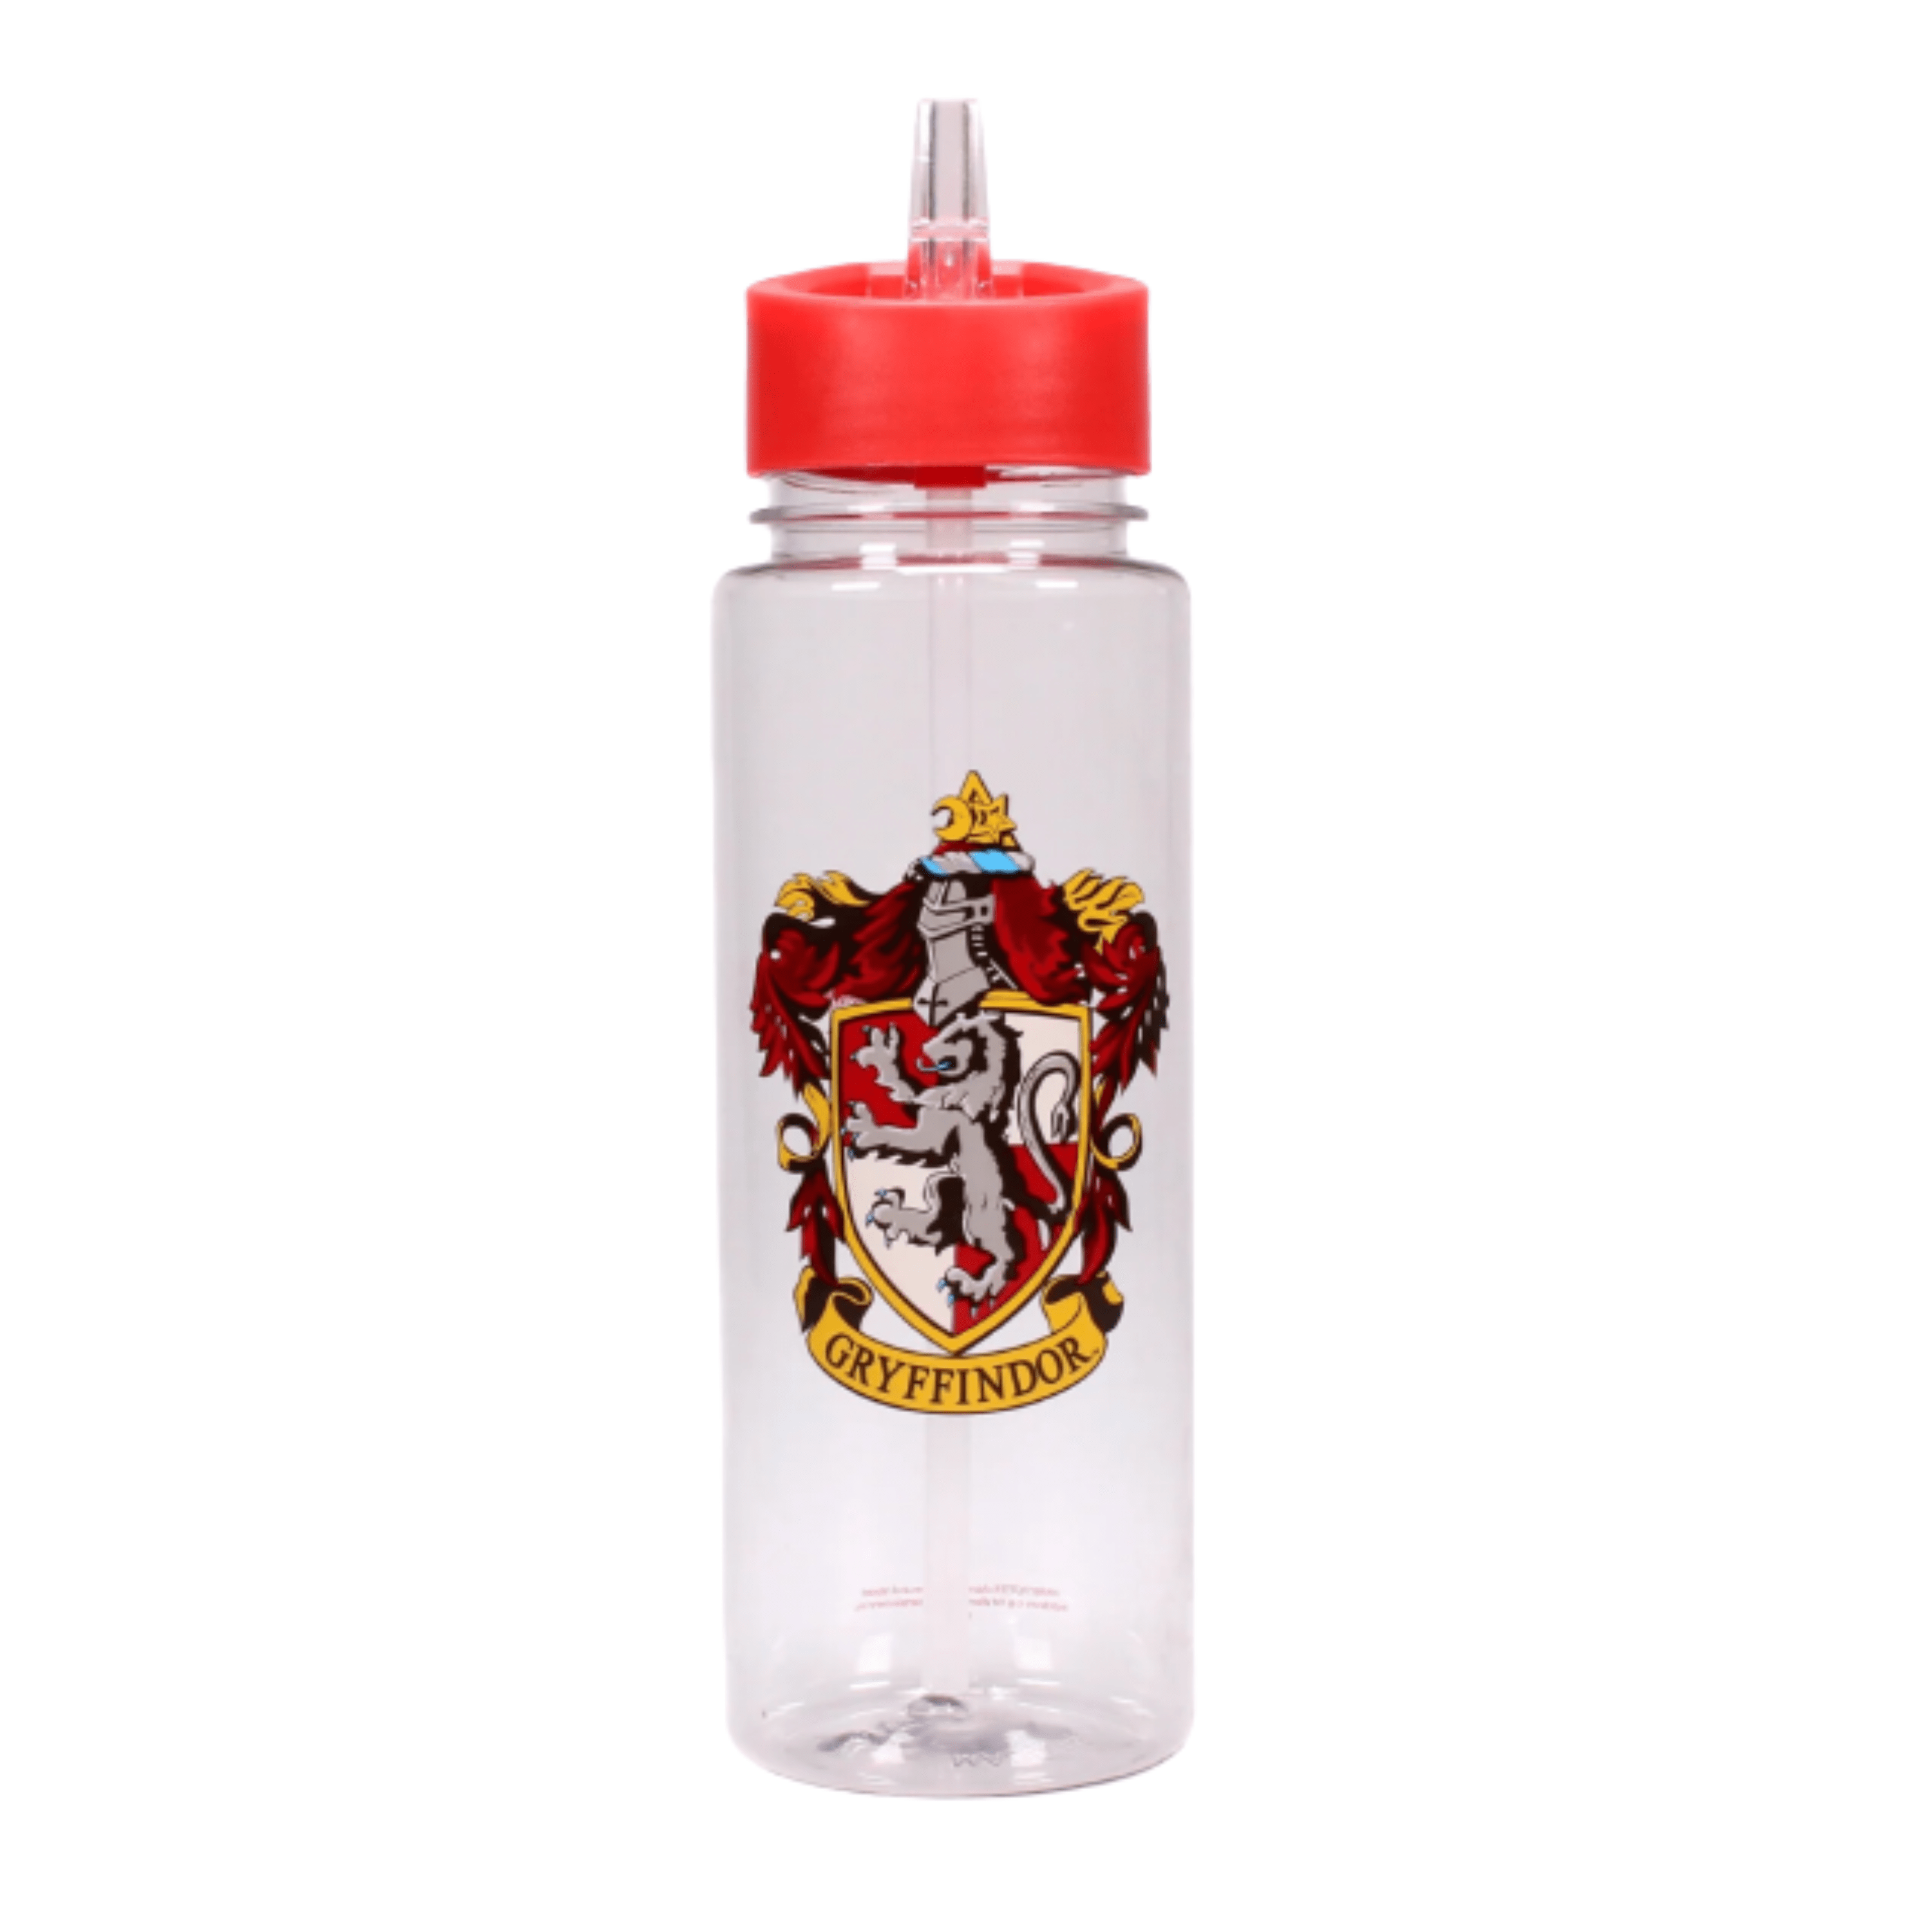 Harry Potter, Gryffindor House Pride Crest Water Bottle